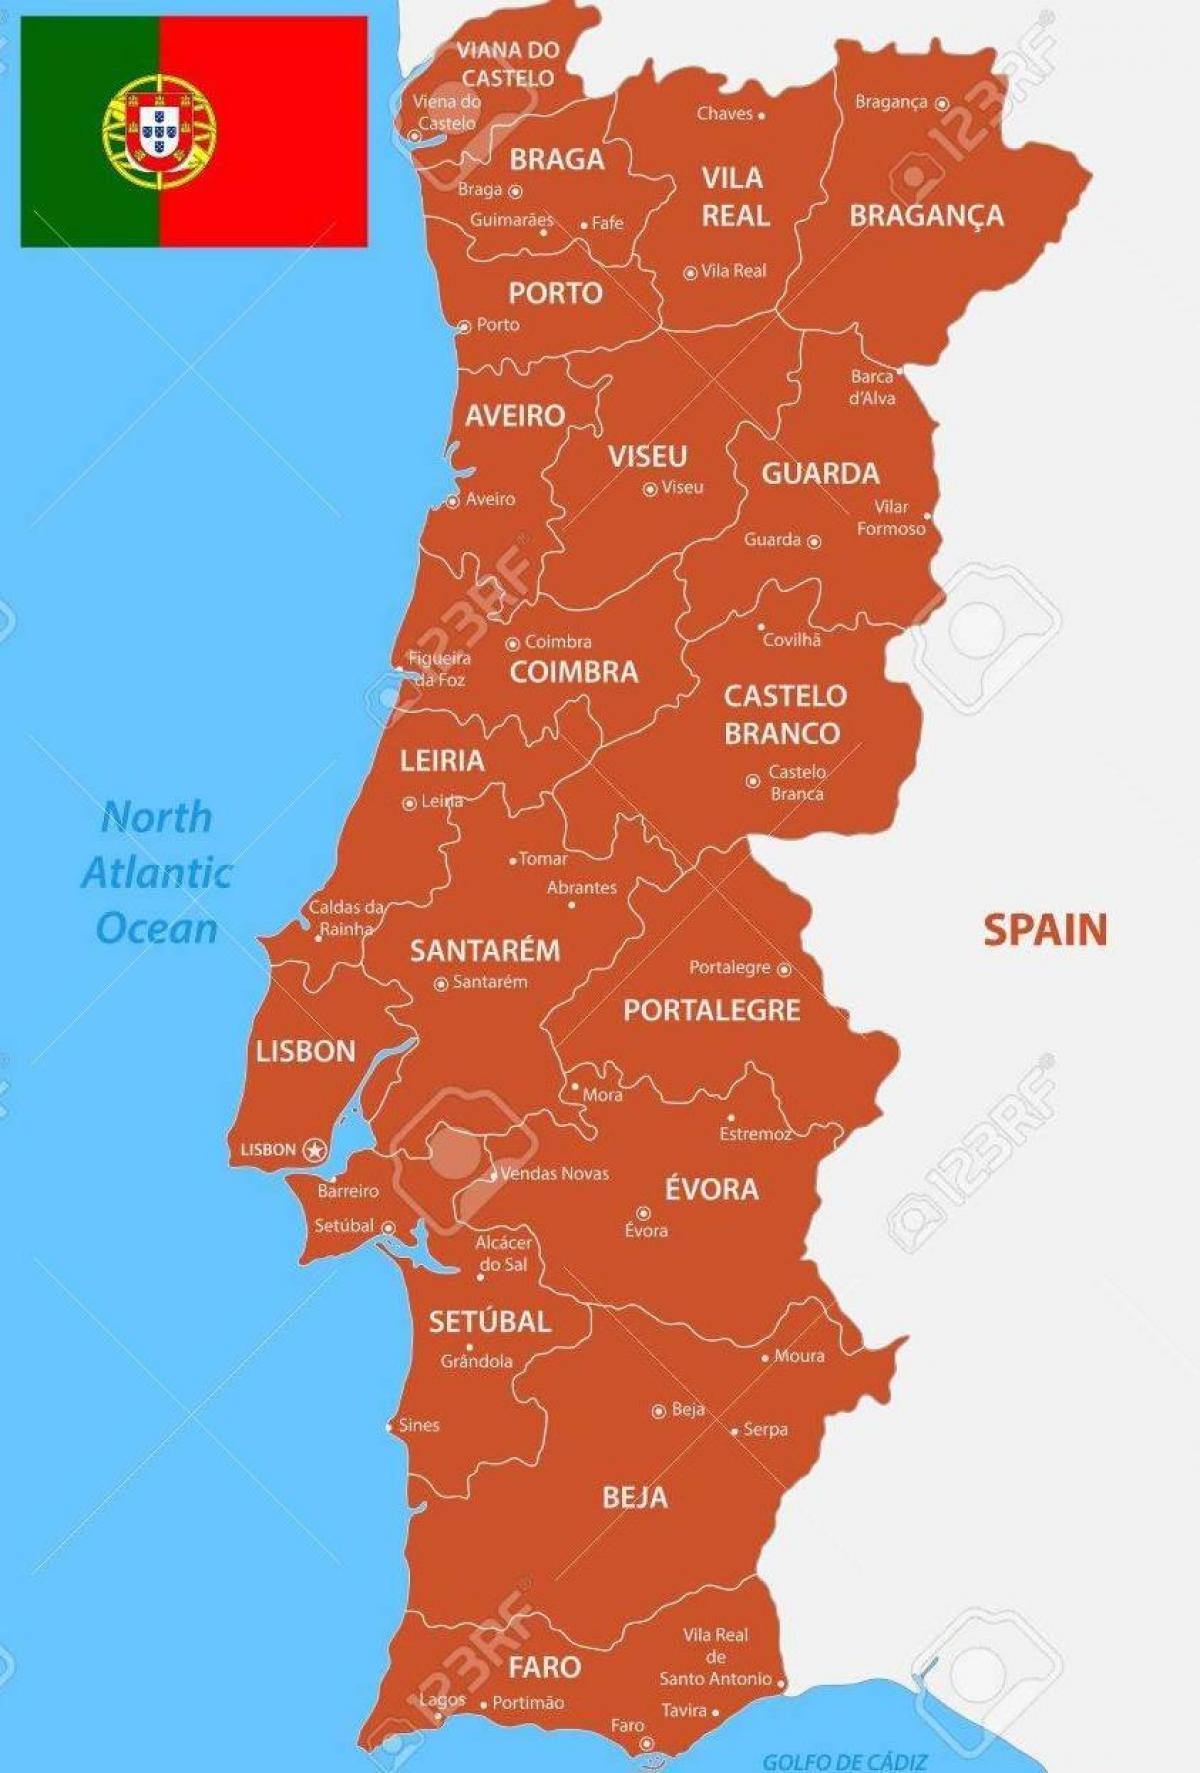 Mapa do estado de Portugal